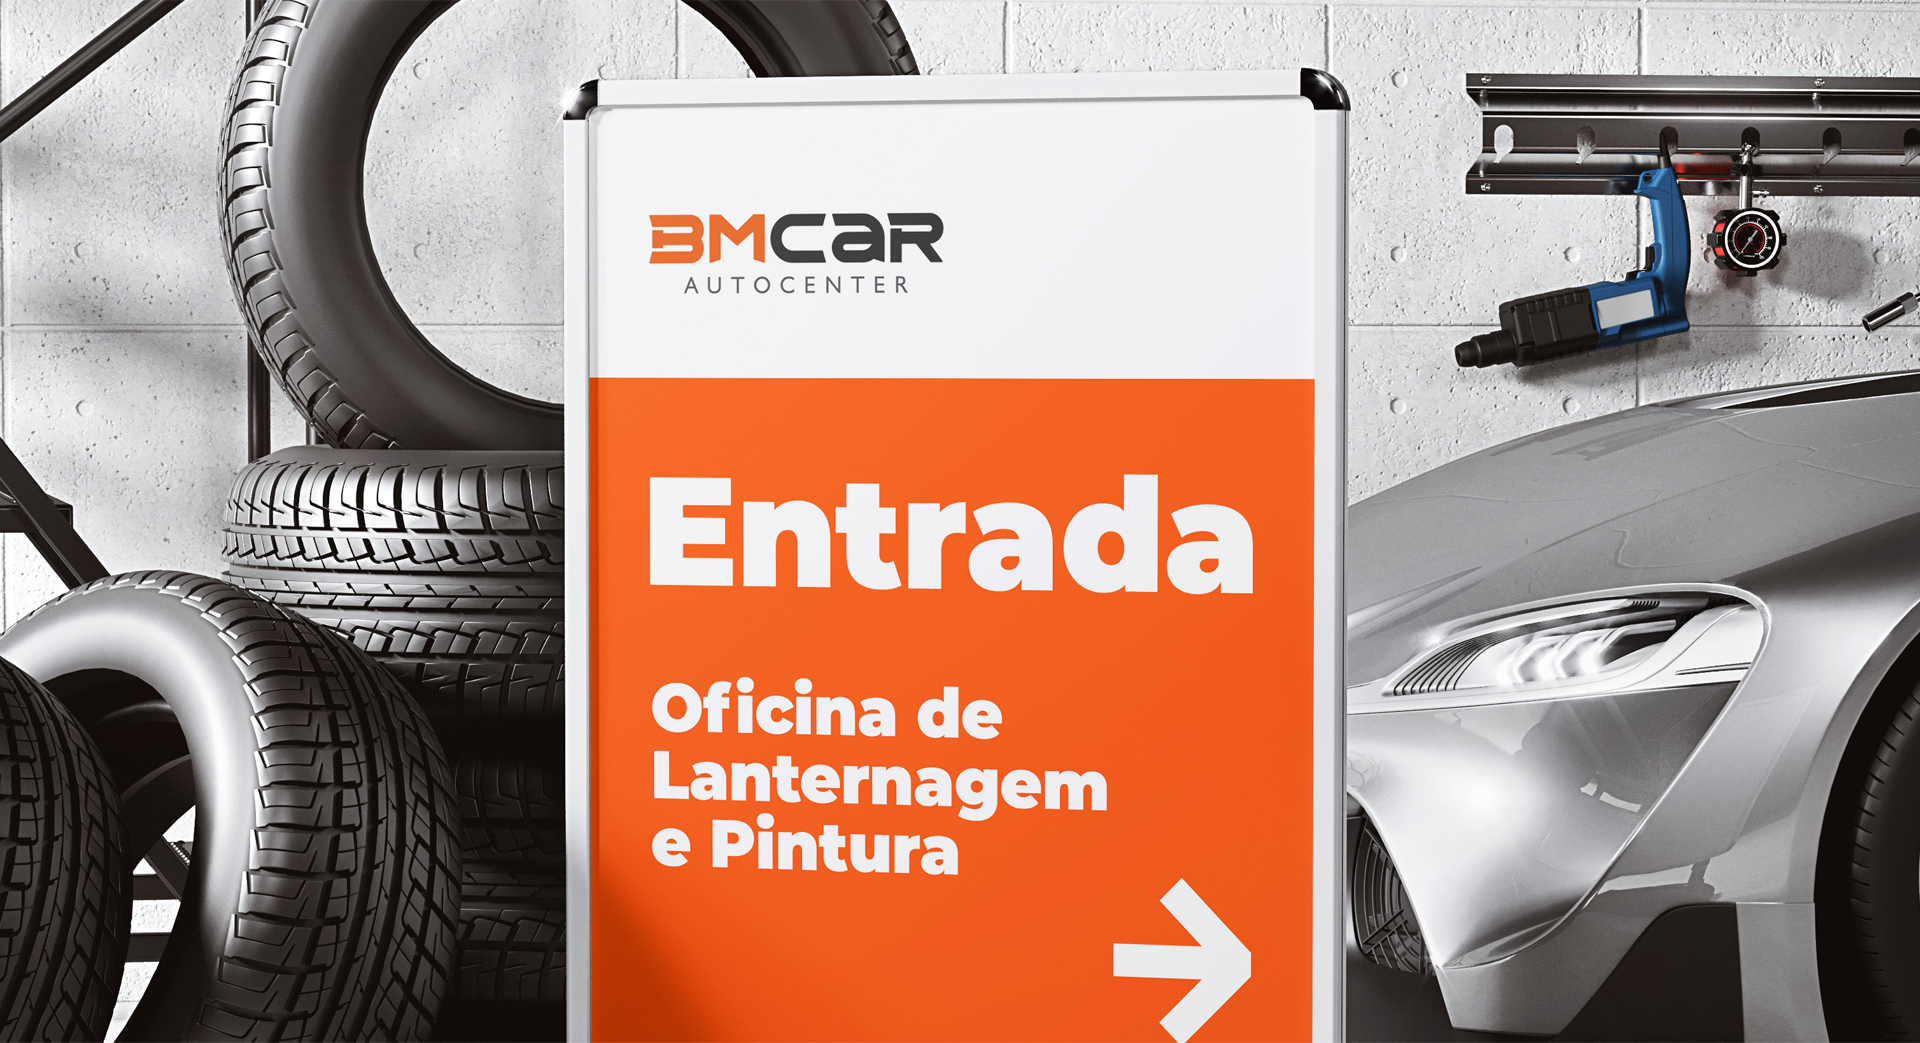 BM Car Auto Center - Aplicação da logo em papelaria